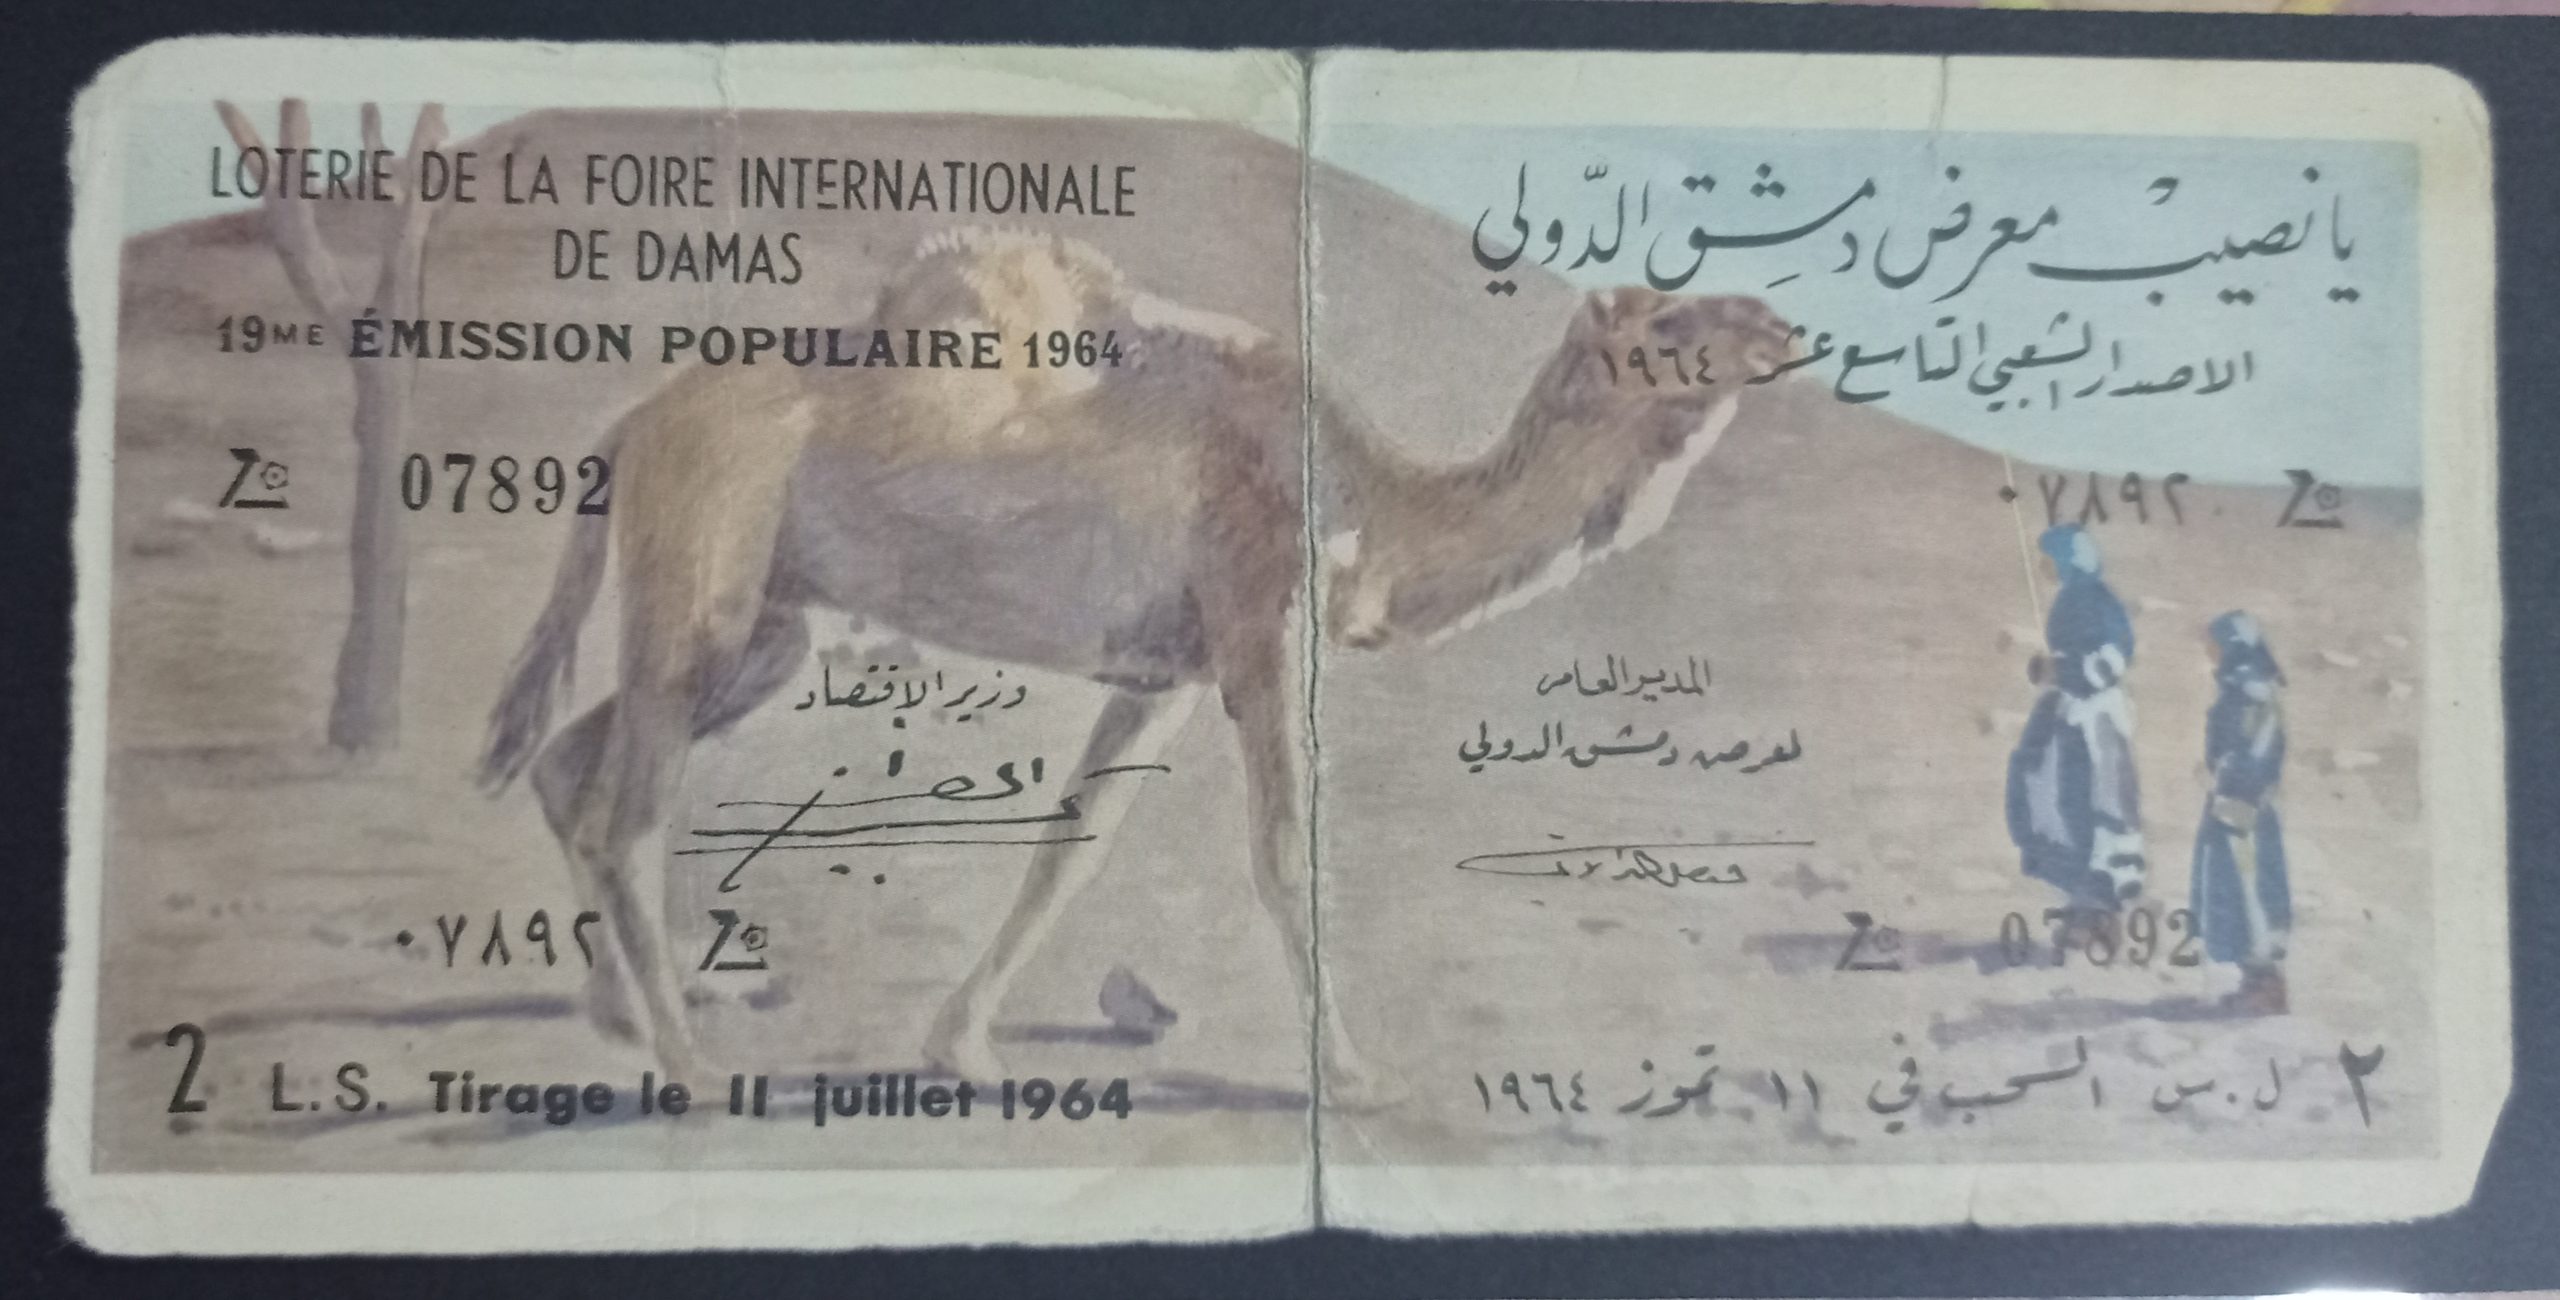 التاريخ السوري المعاصر - يانصيب معرض دمشق الدولي - الإصدار الشعبي التاسع عشر عام 1964